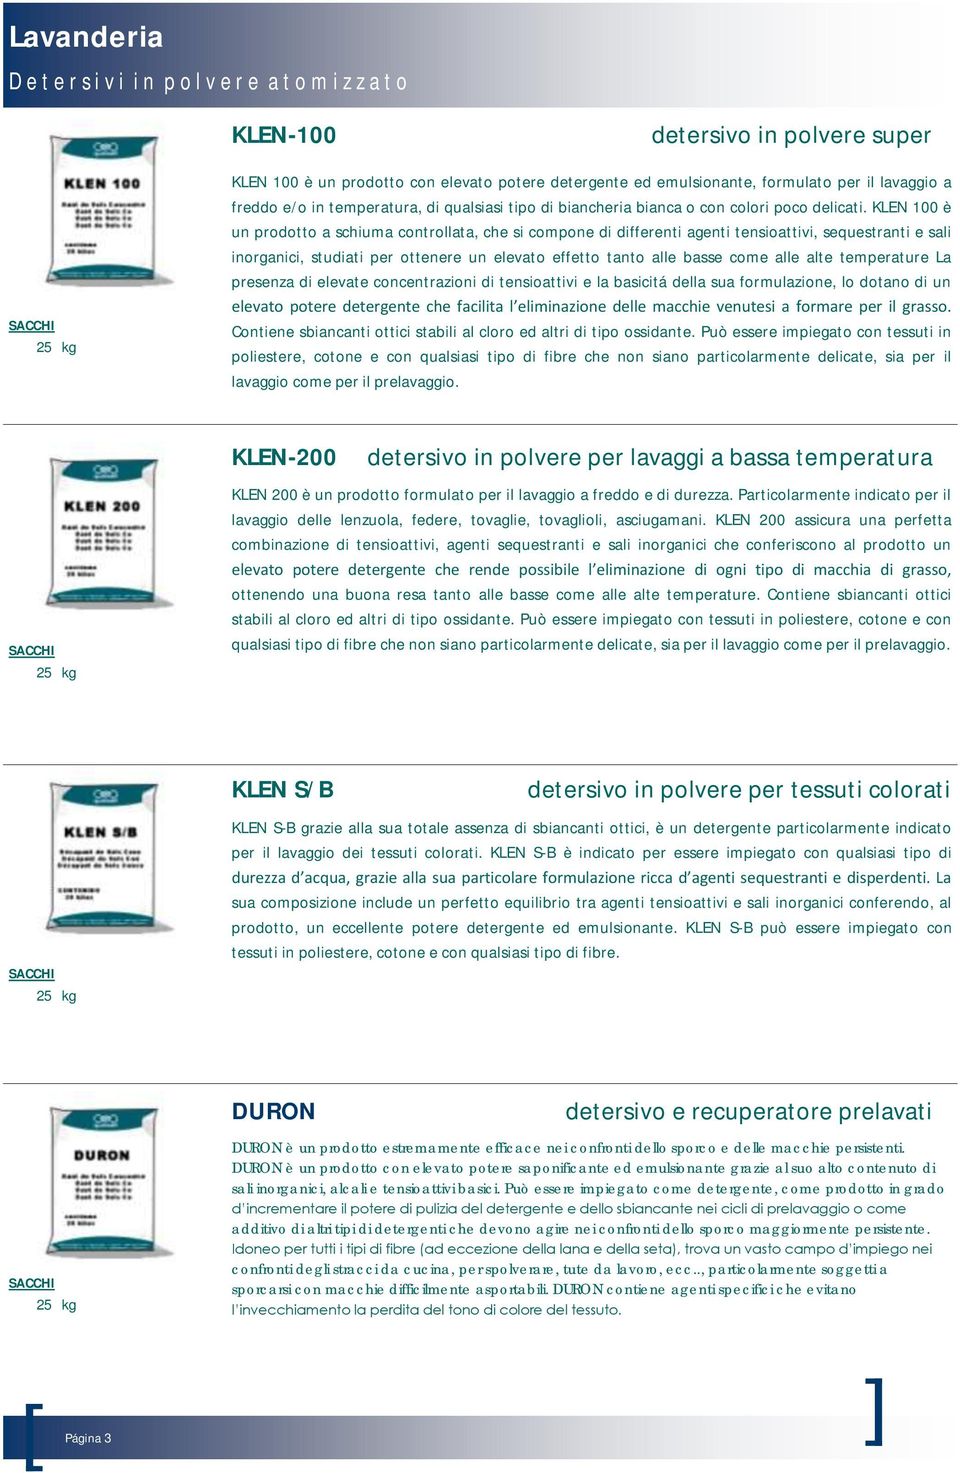 KLEN 100 è un prodotto a schiuma controllata, che si compone di differenti agenti tensioattivi, sequestranti e sali inorganici, studiati per ottenere un elevato effetto tanto alle basse come alle